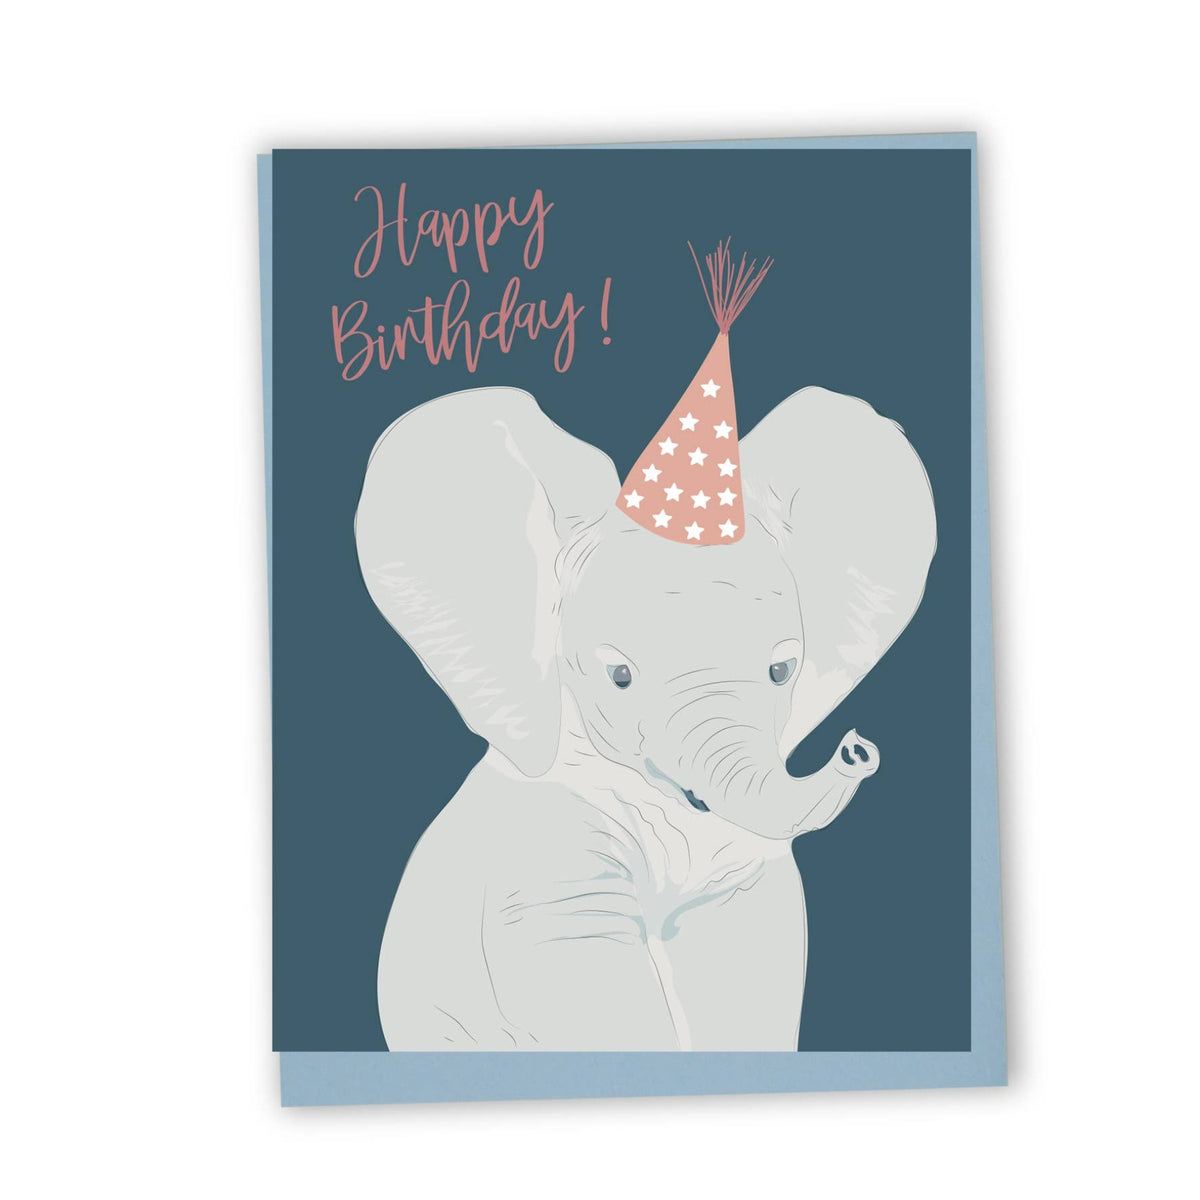 Happy birthday (elephant)